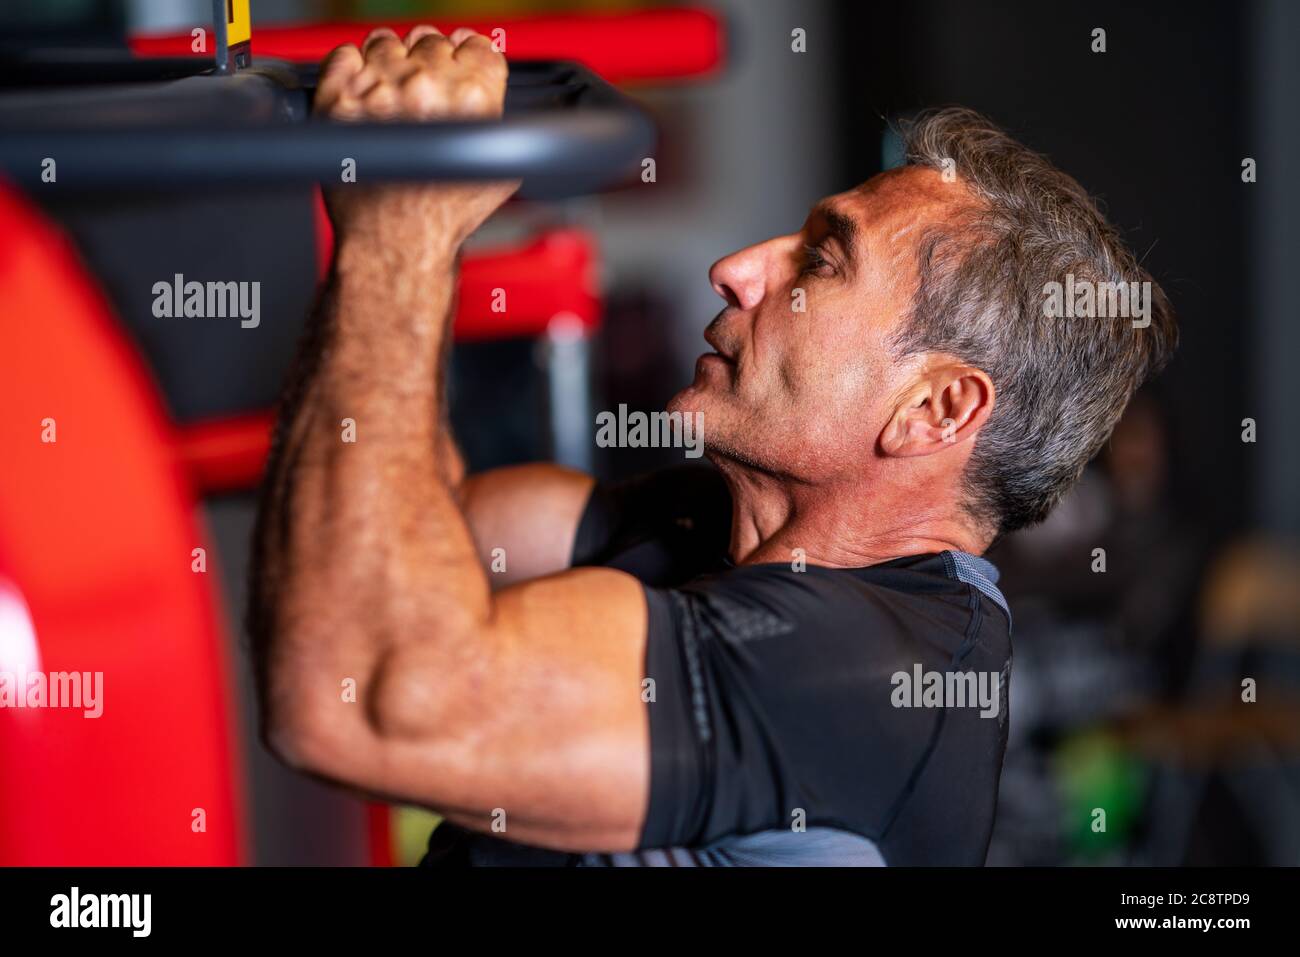 homme renforçant ses muscles en faisant un pull-up sur la barre horizontale dans un centre de fitness. Photo de haute qualité Banque D'Images